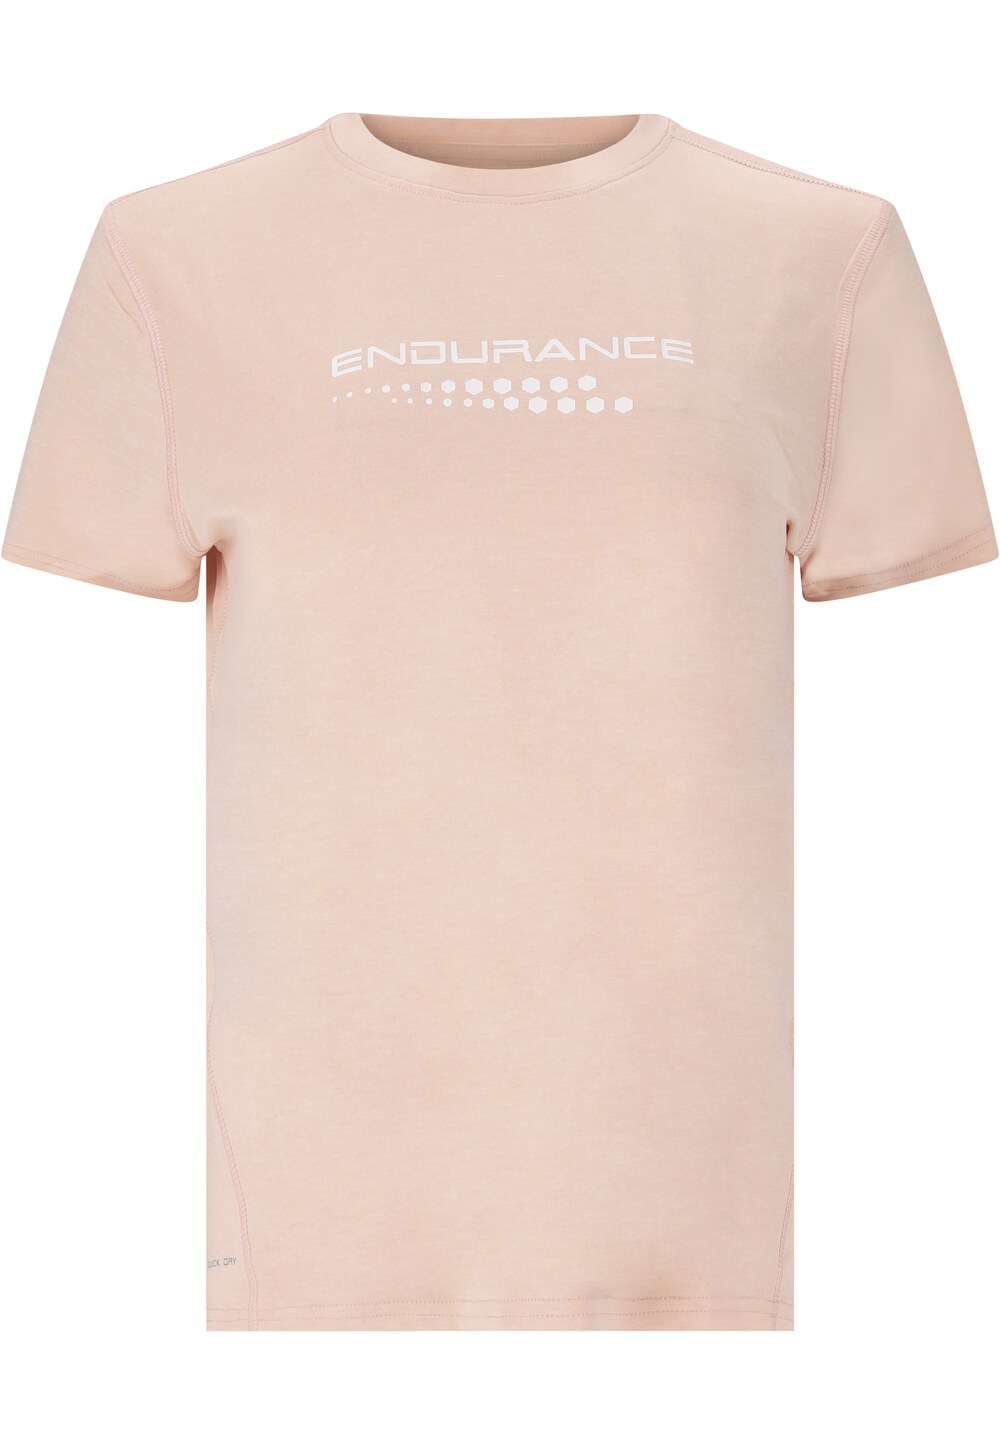 Рубашка для выступлений ENDURANCE Wange, розовый